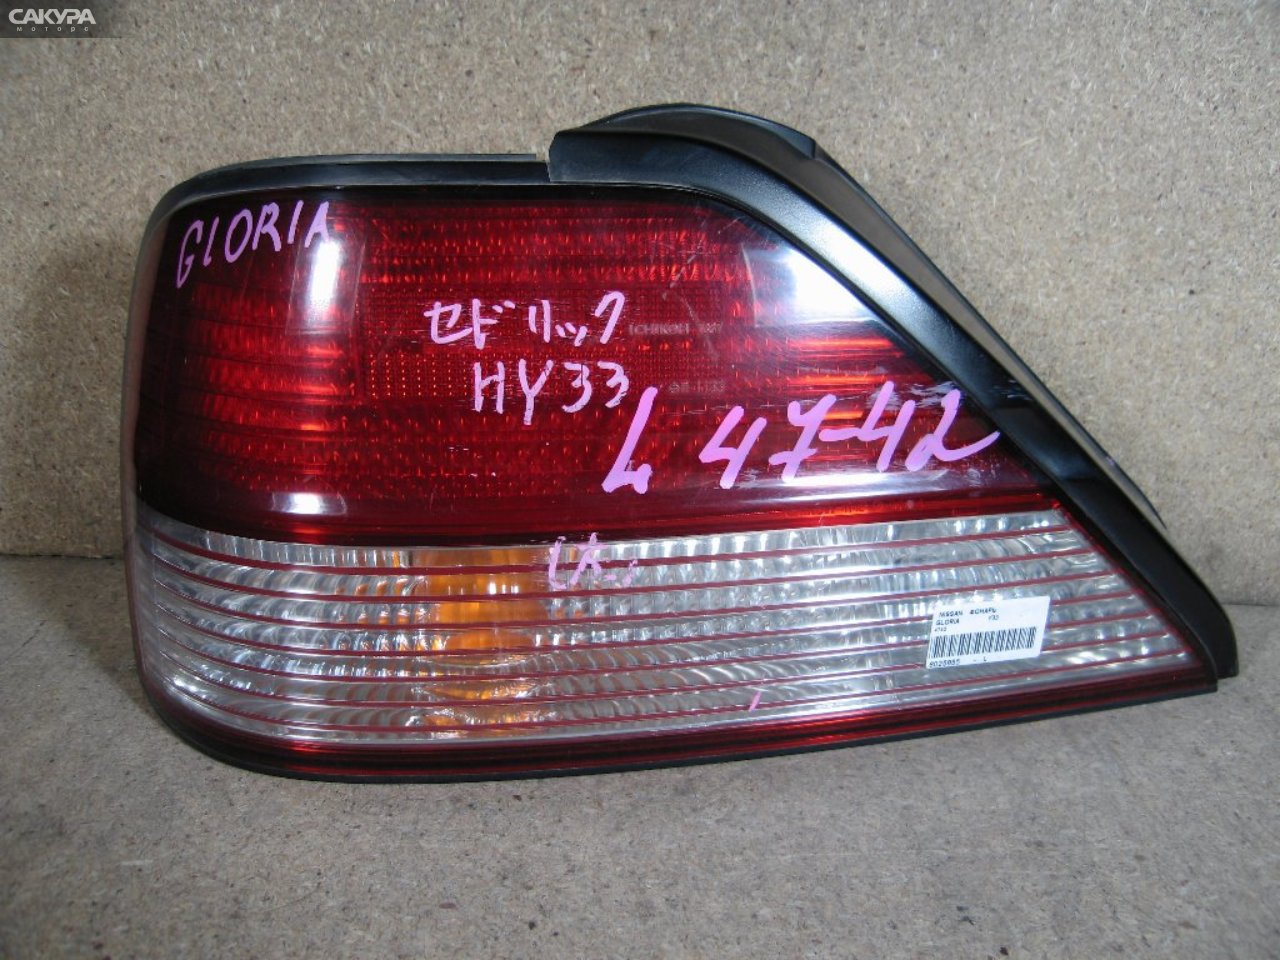 Фонарь стоп-сигнала левый Nissan Gloria Y33 4742: купить в Сакура Абакан.